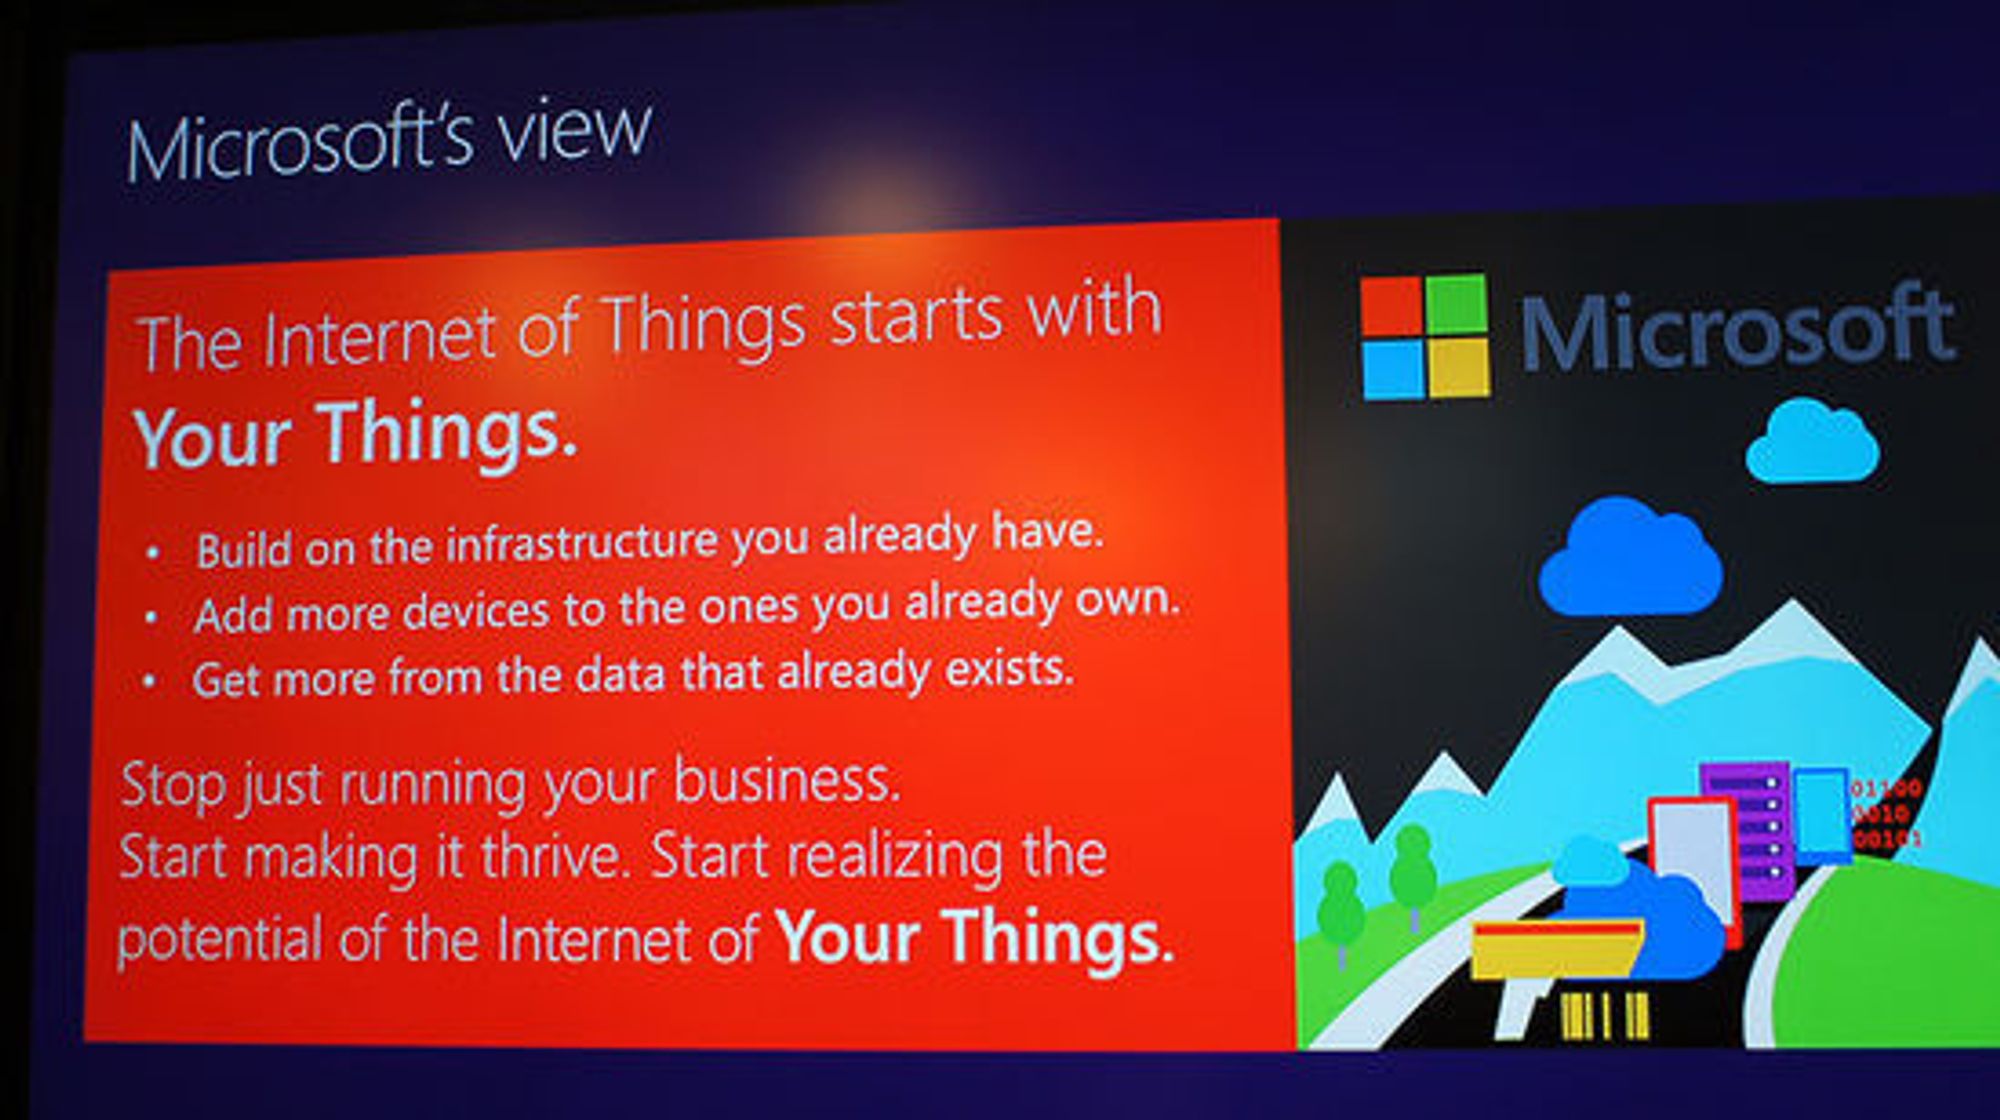 Det handler om dine ting først, sier Microsoft.